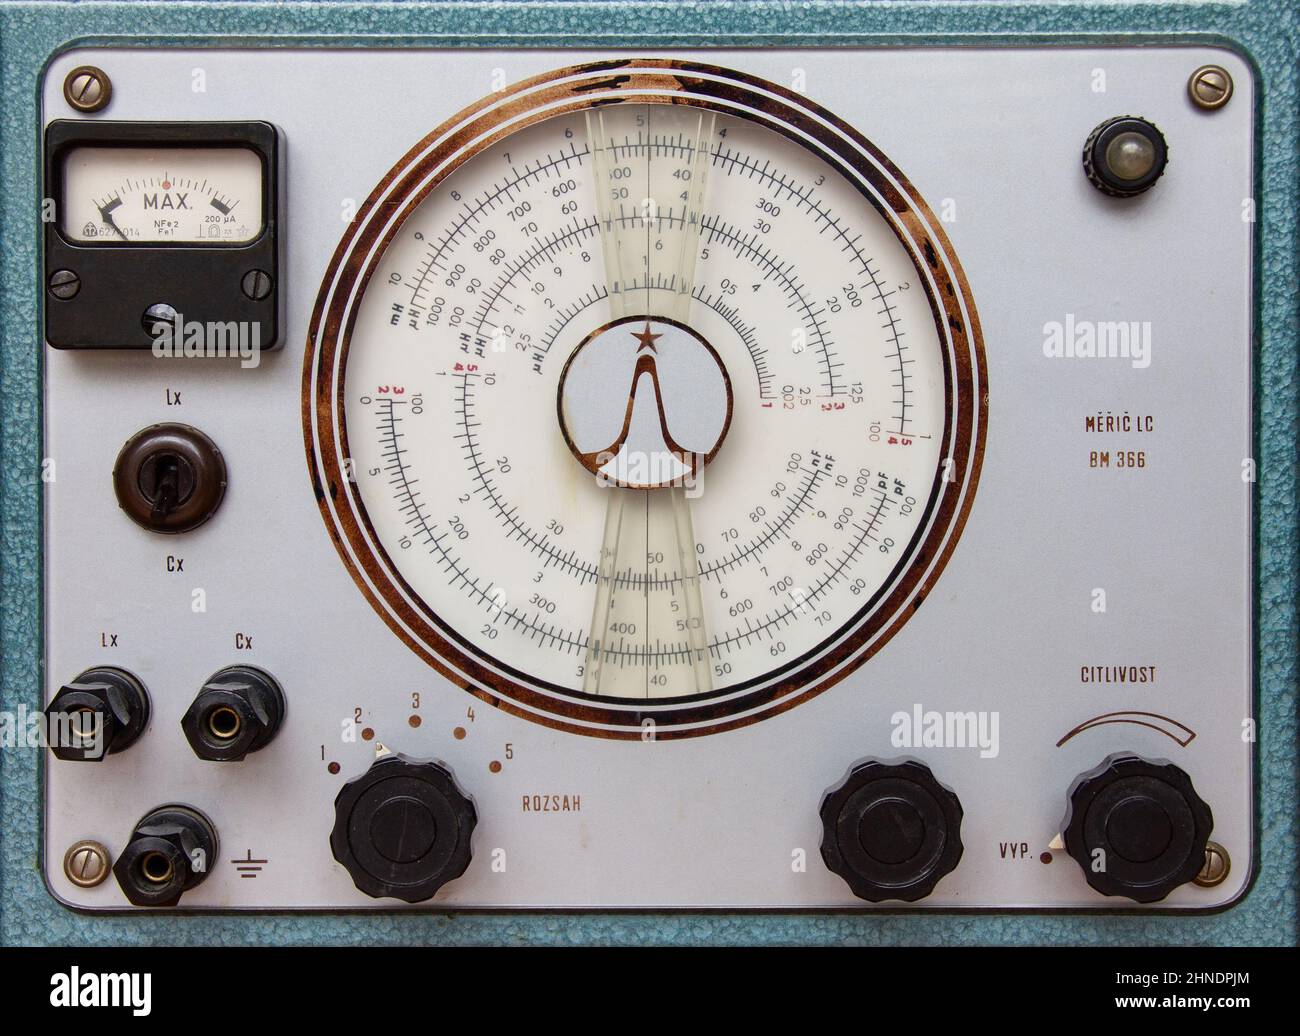 Ancien appareil de mesure avec indicateur de mesure analogique Banque D'Images